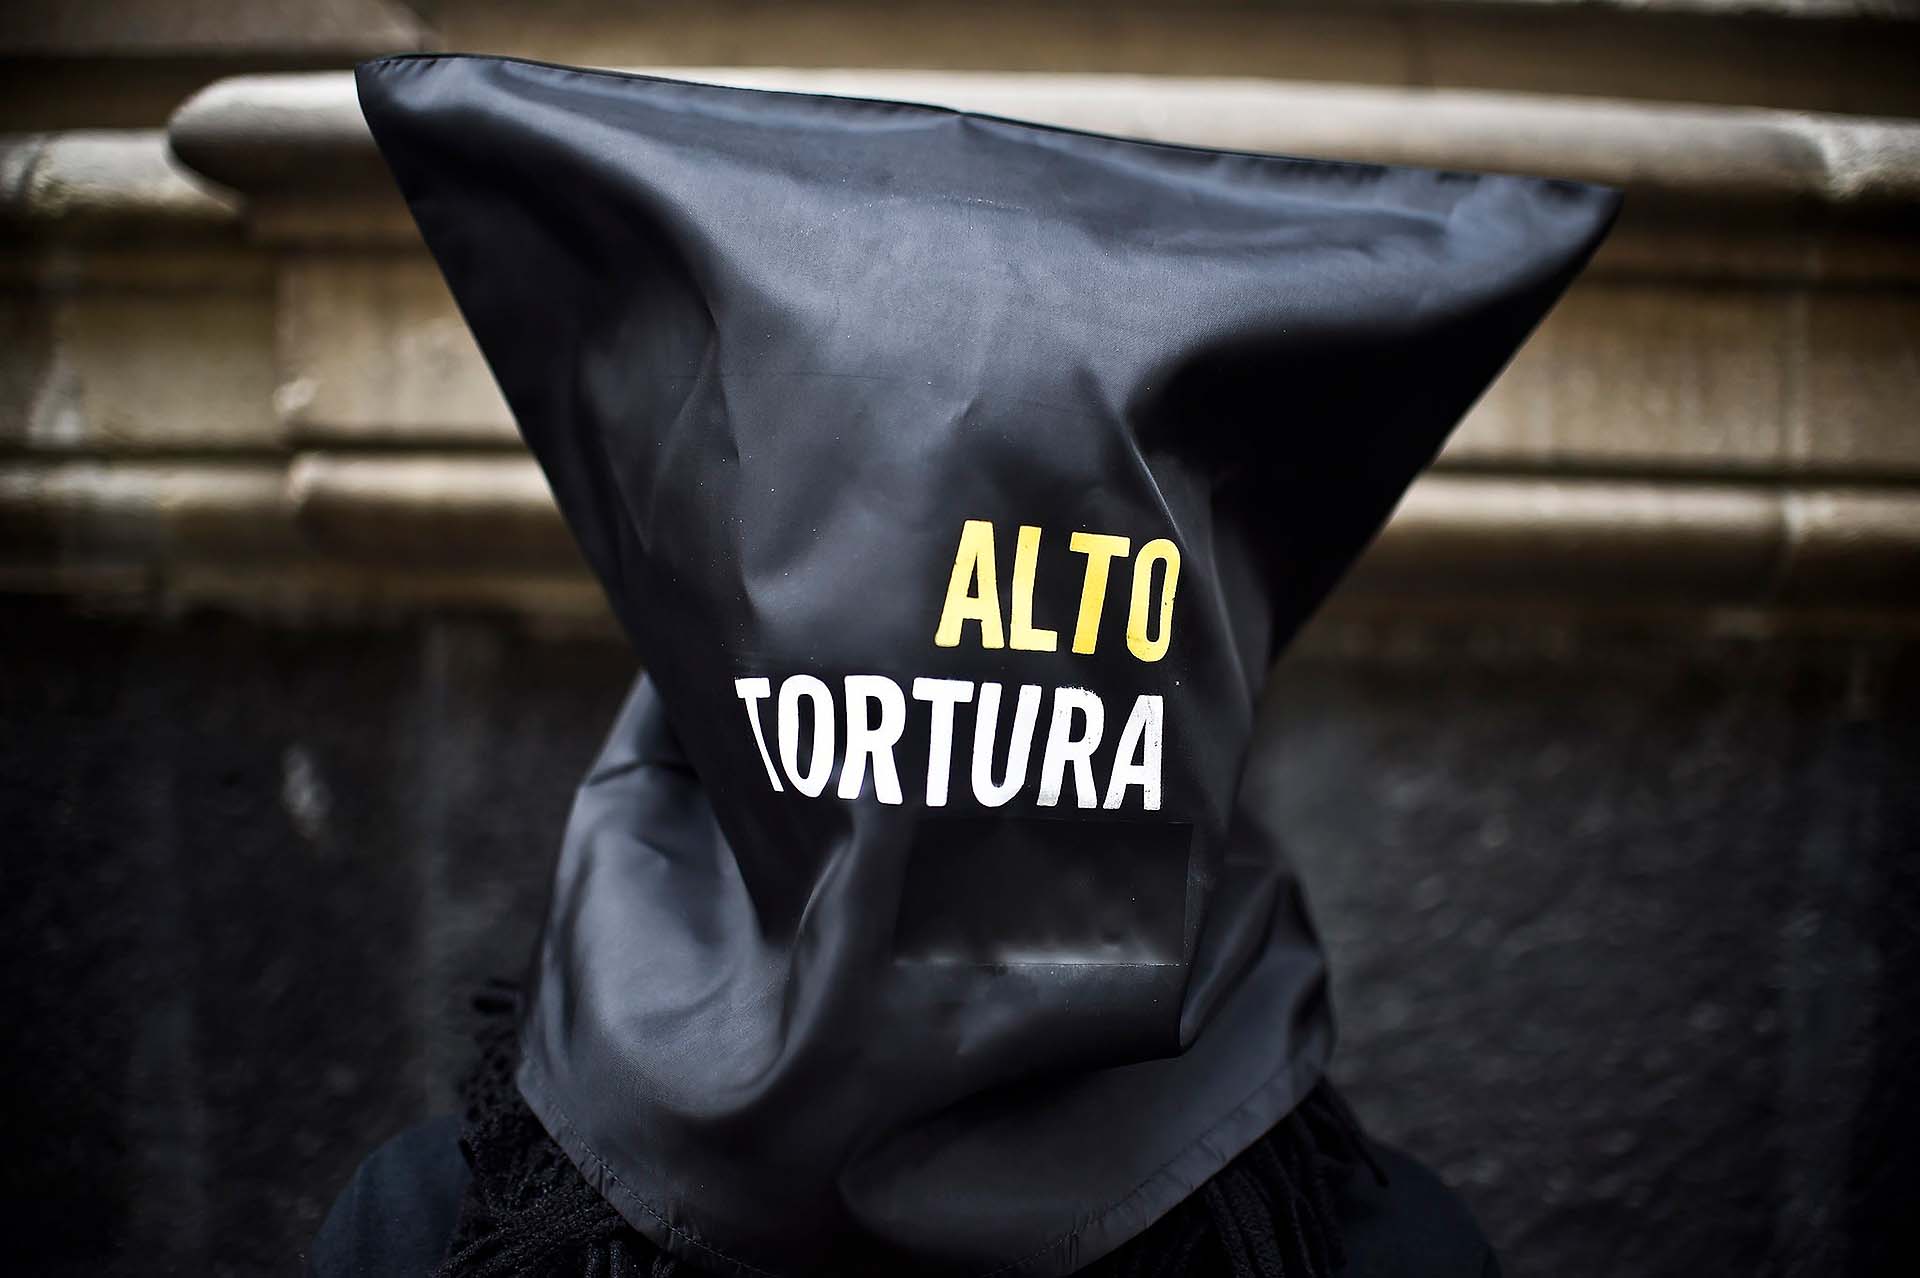 Stop torture © Amnesty International